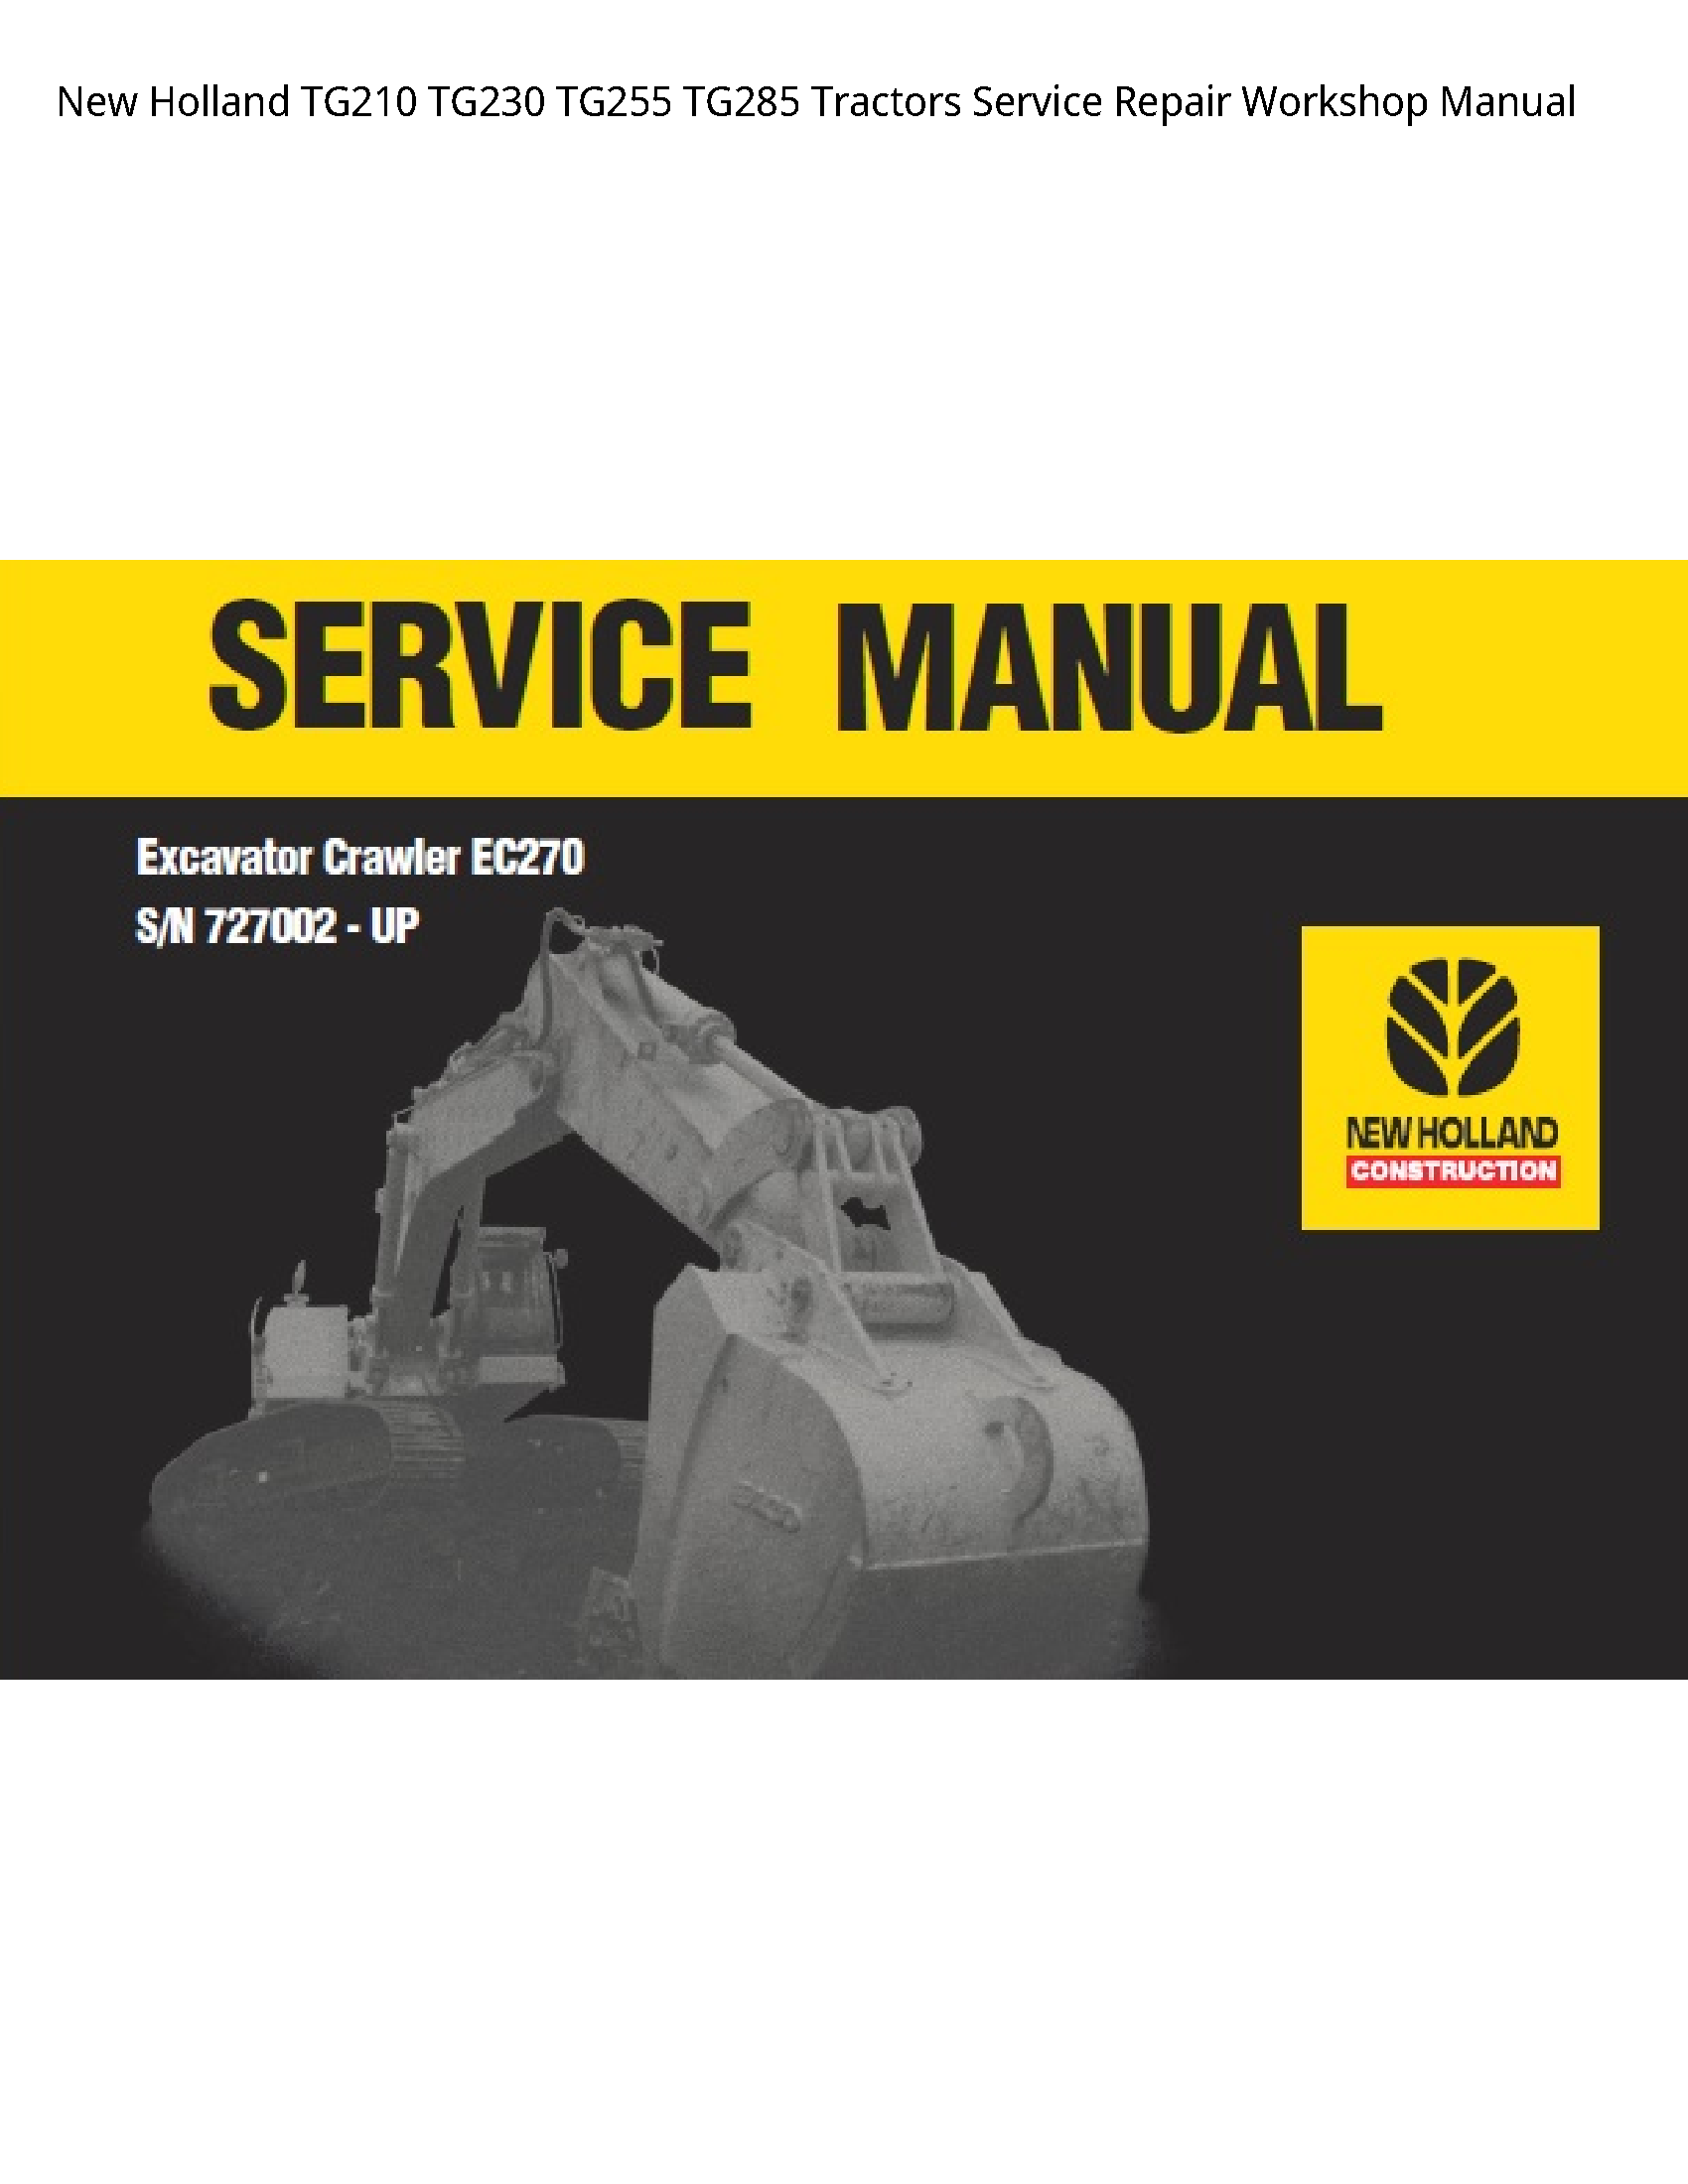 New Holland TG210 Tractors manual